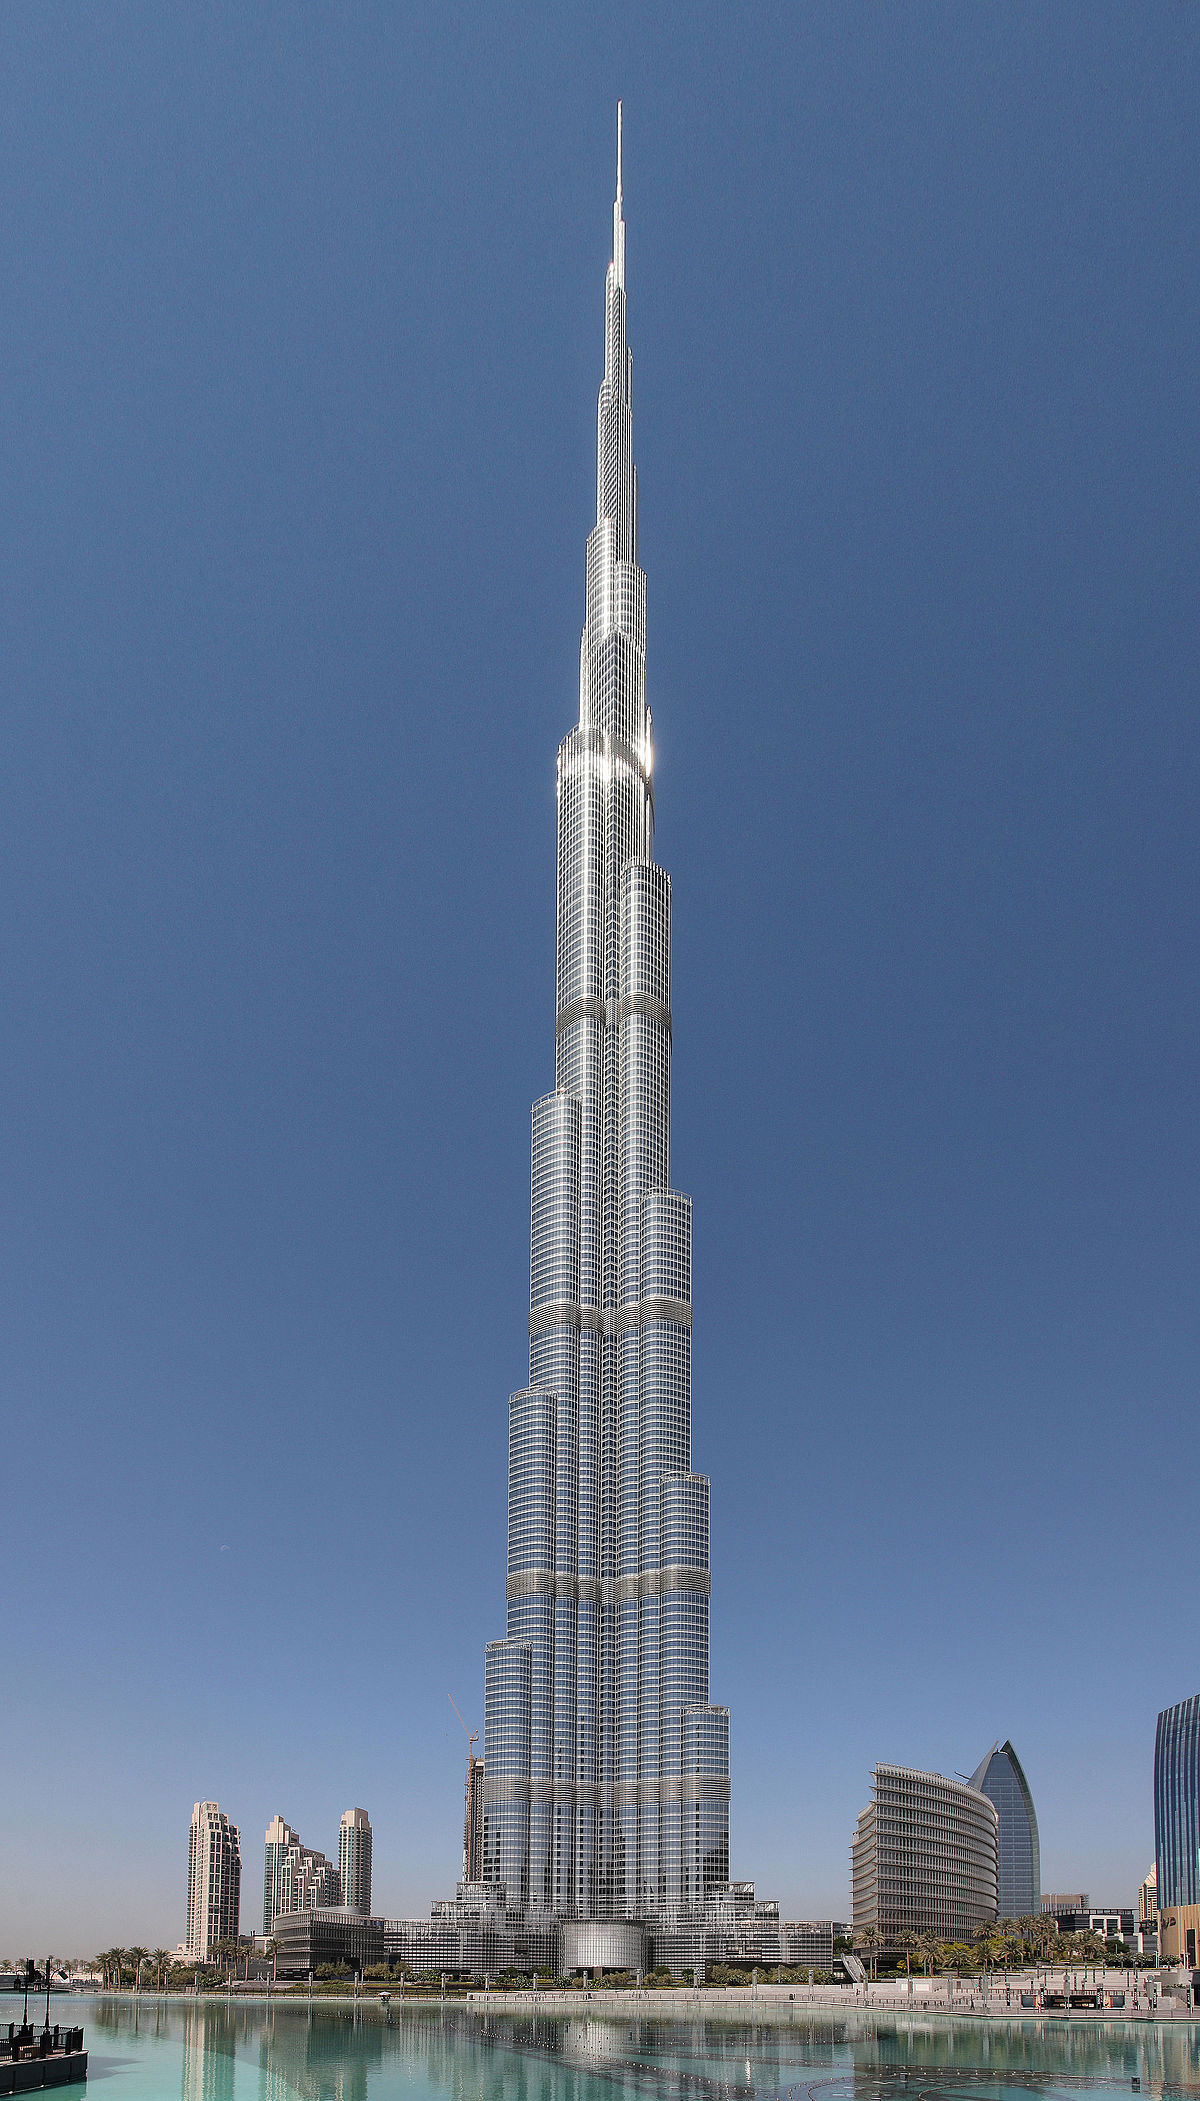 Hãy đến tham quan tòa nhà Burj Khalifa - biểu tượng của sự giàu có và sự sang trọng. Hãy đắm mình trong những khung cảnh đẹp nhất thế giới từ độ cao 828 mét. Đây là một trải nghiệm không thể bỏ qua khi đến thăm Dubai.